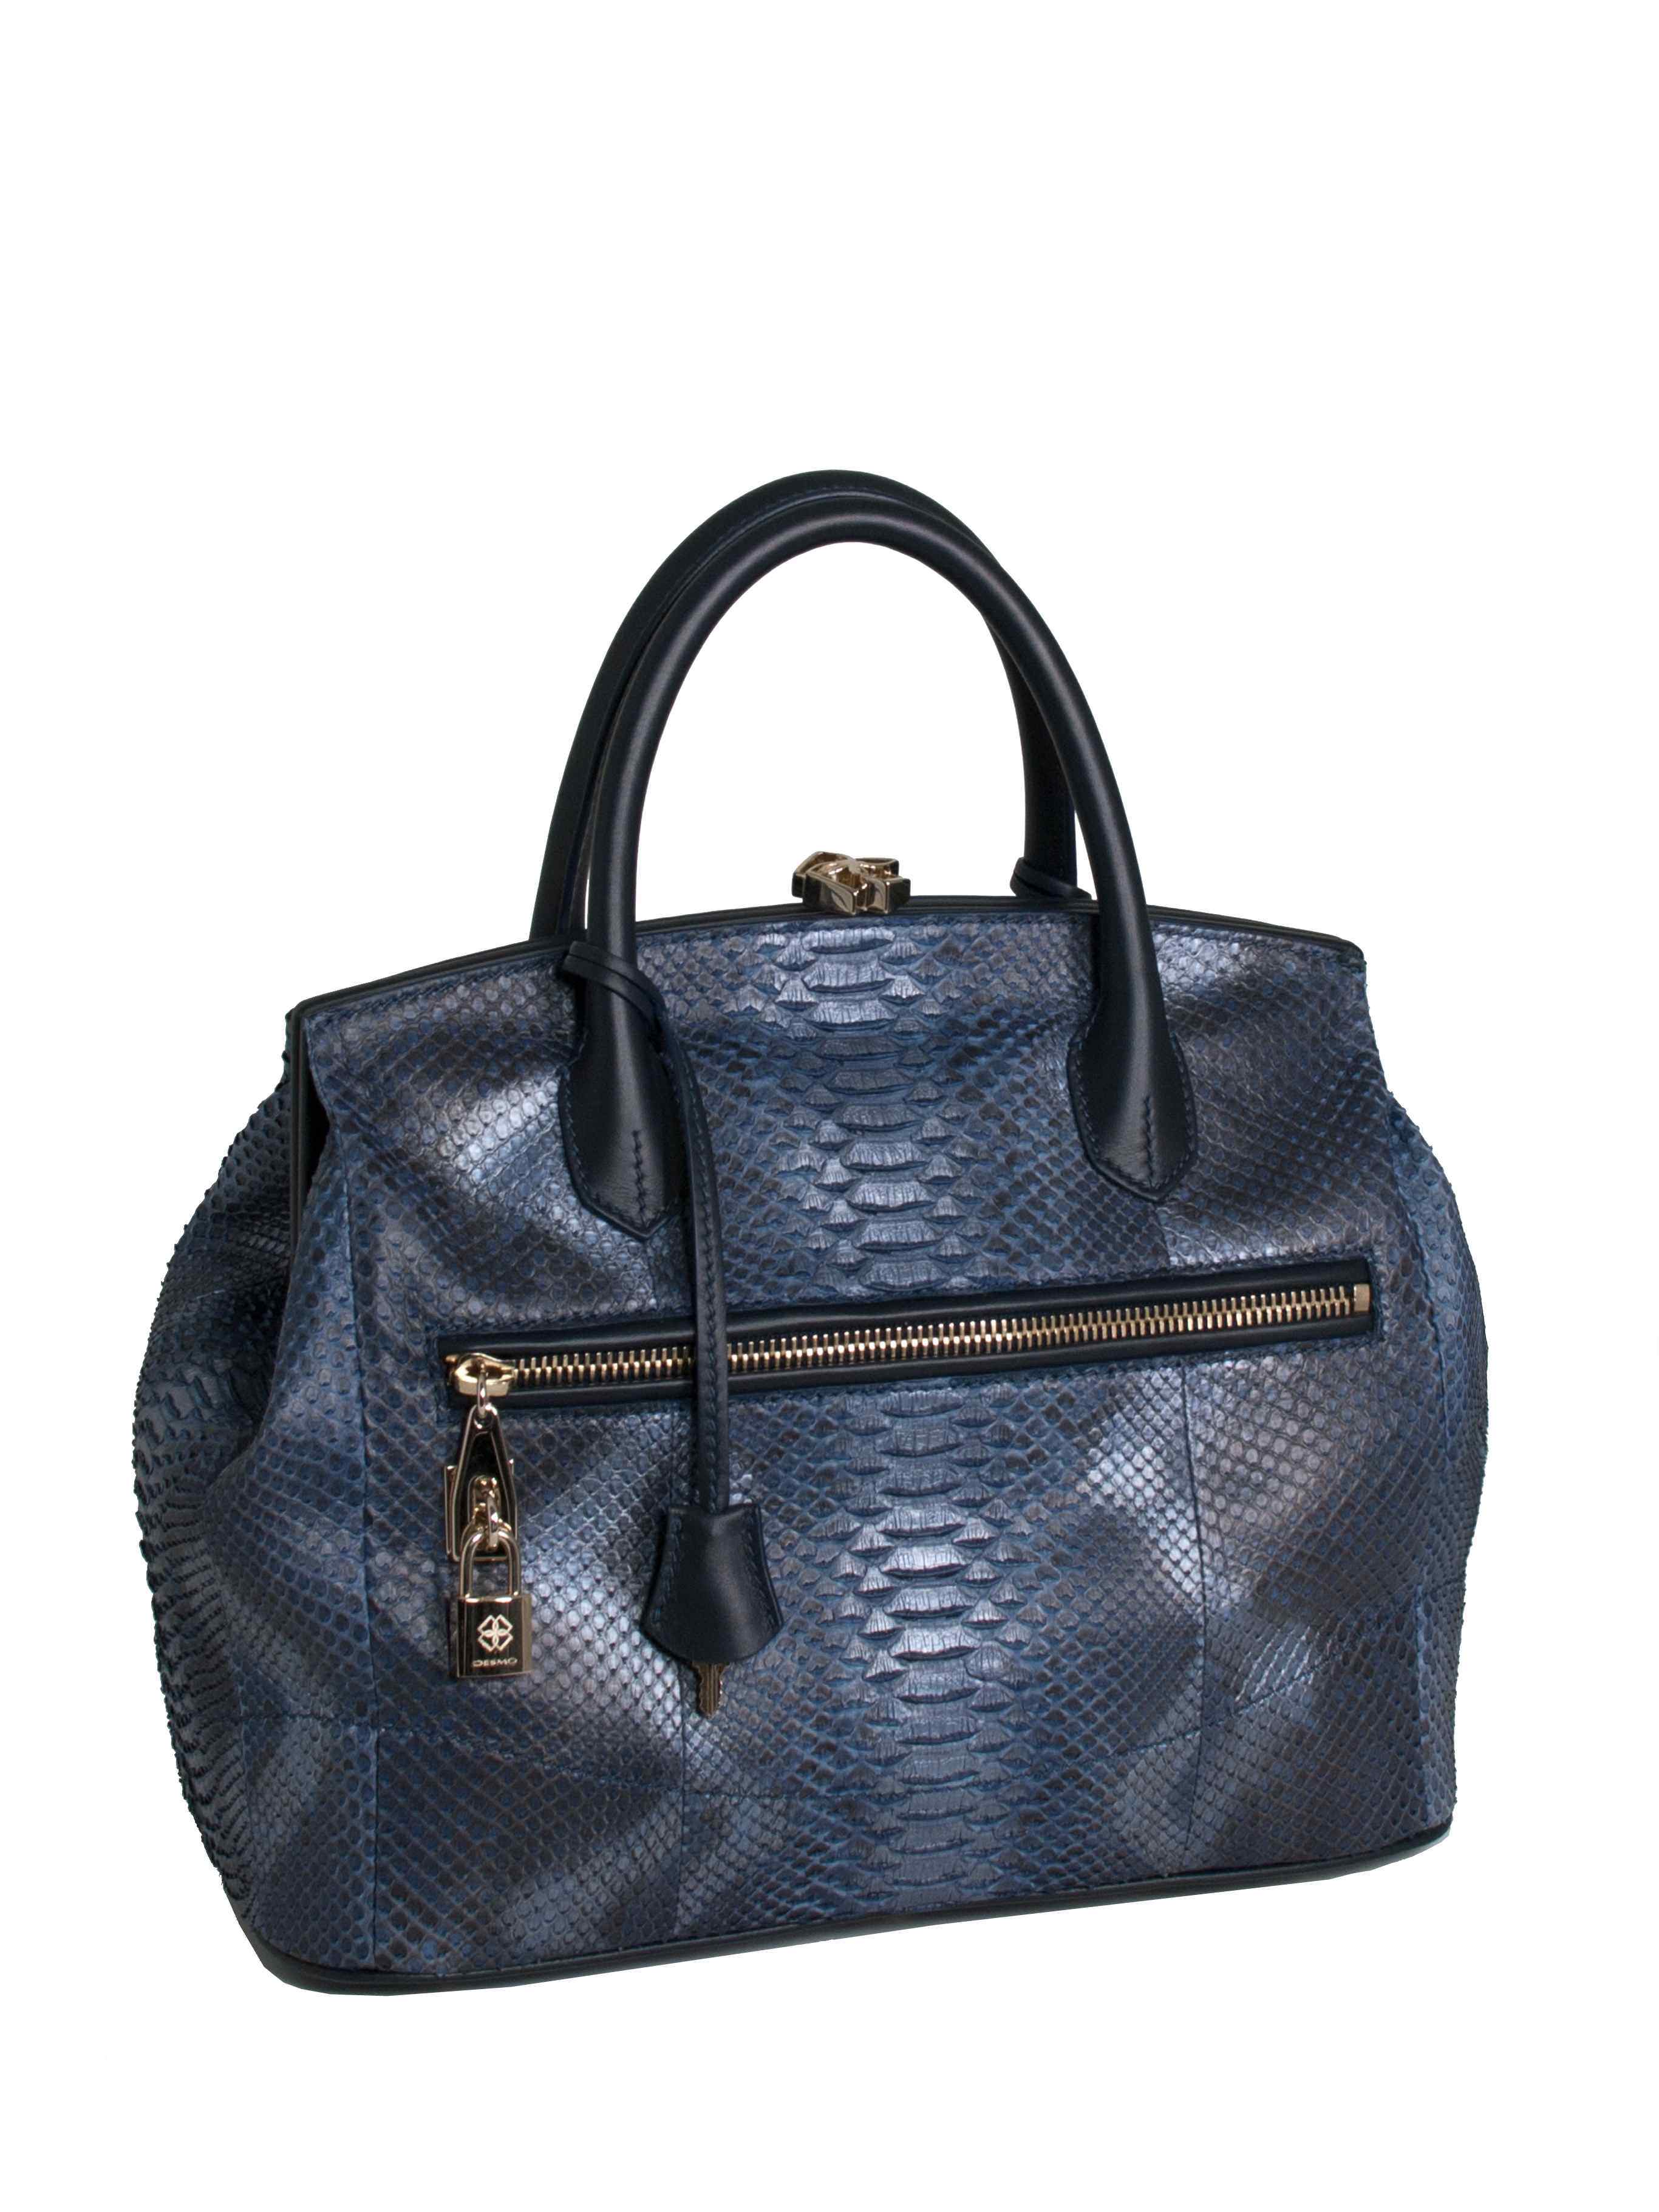 Desmo borse collezione autunno inverno 2015 2016: la Sara bag in una nuova veste esclusiva